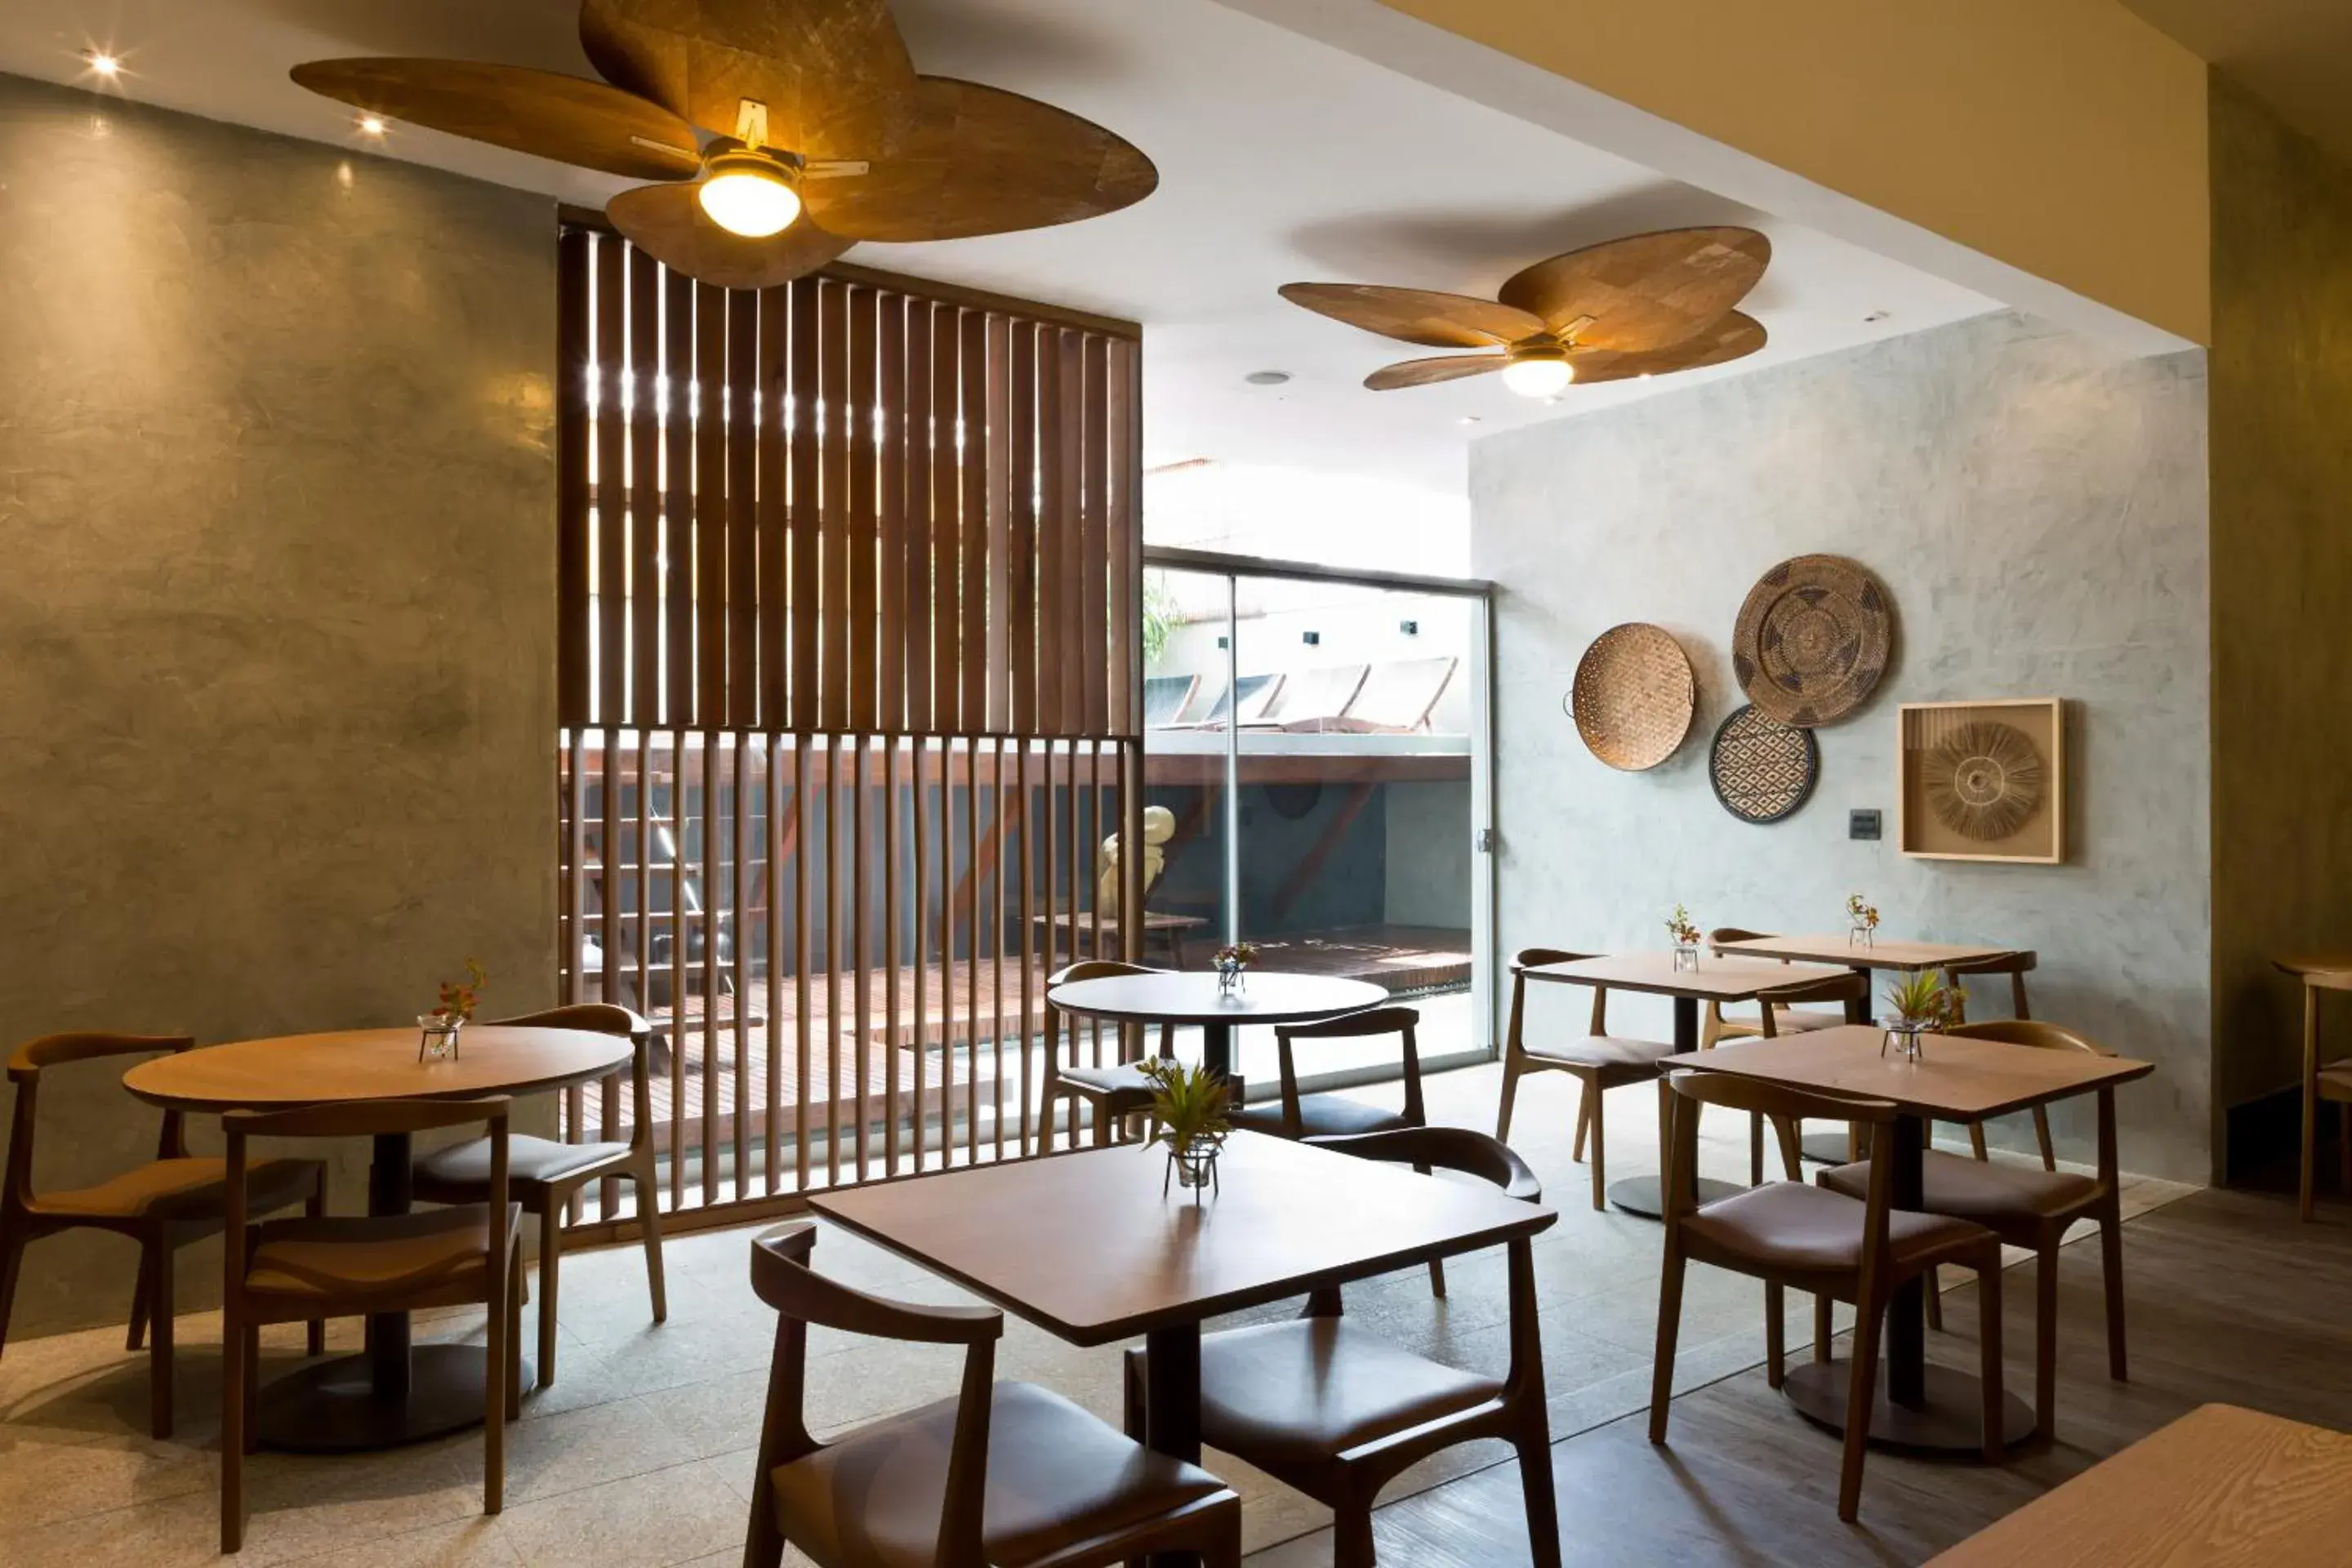 Restaurant/places to eat, Lounge/Bar in Ritz Leblon